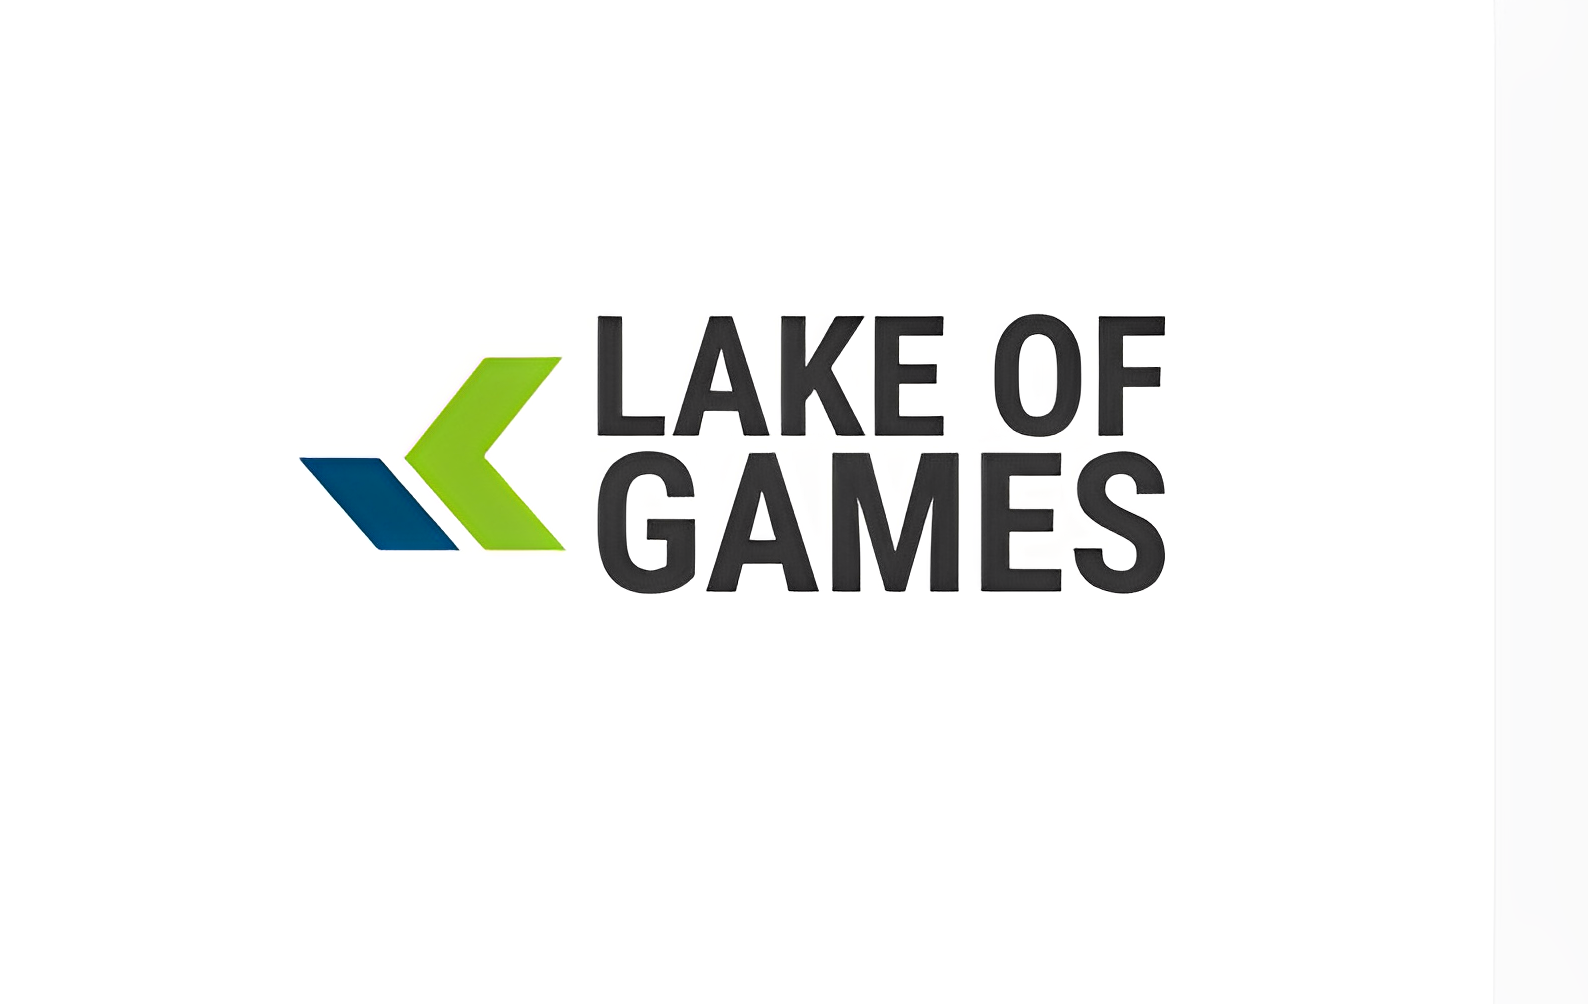 LAKE OF GAMES